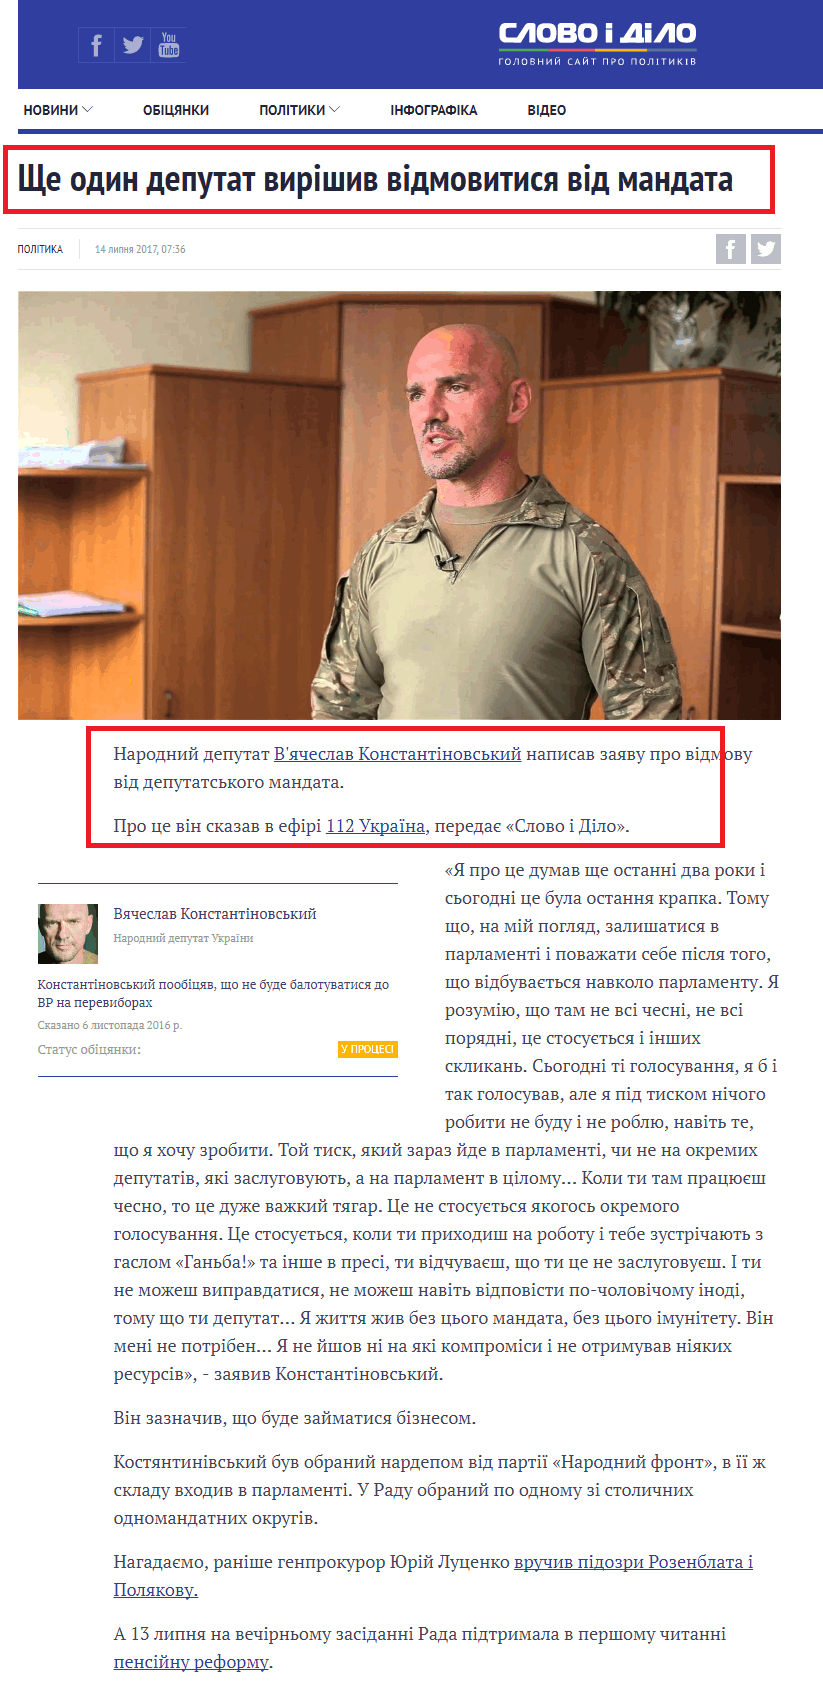 https://www.slovoidilo.ua/2017/07/14/novyna/polityka/deputat-narodnoho-frontu-vyrishyv-vidmovytysya-mandatu